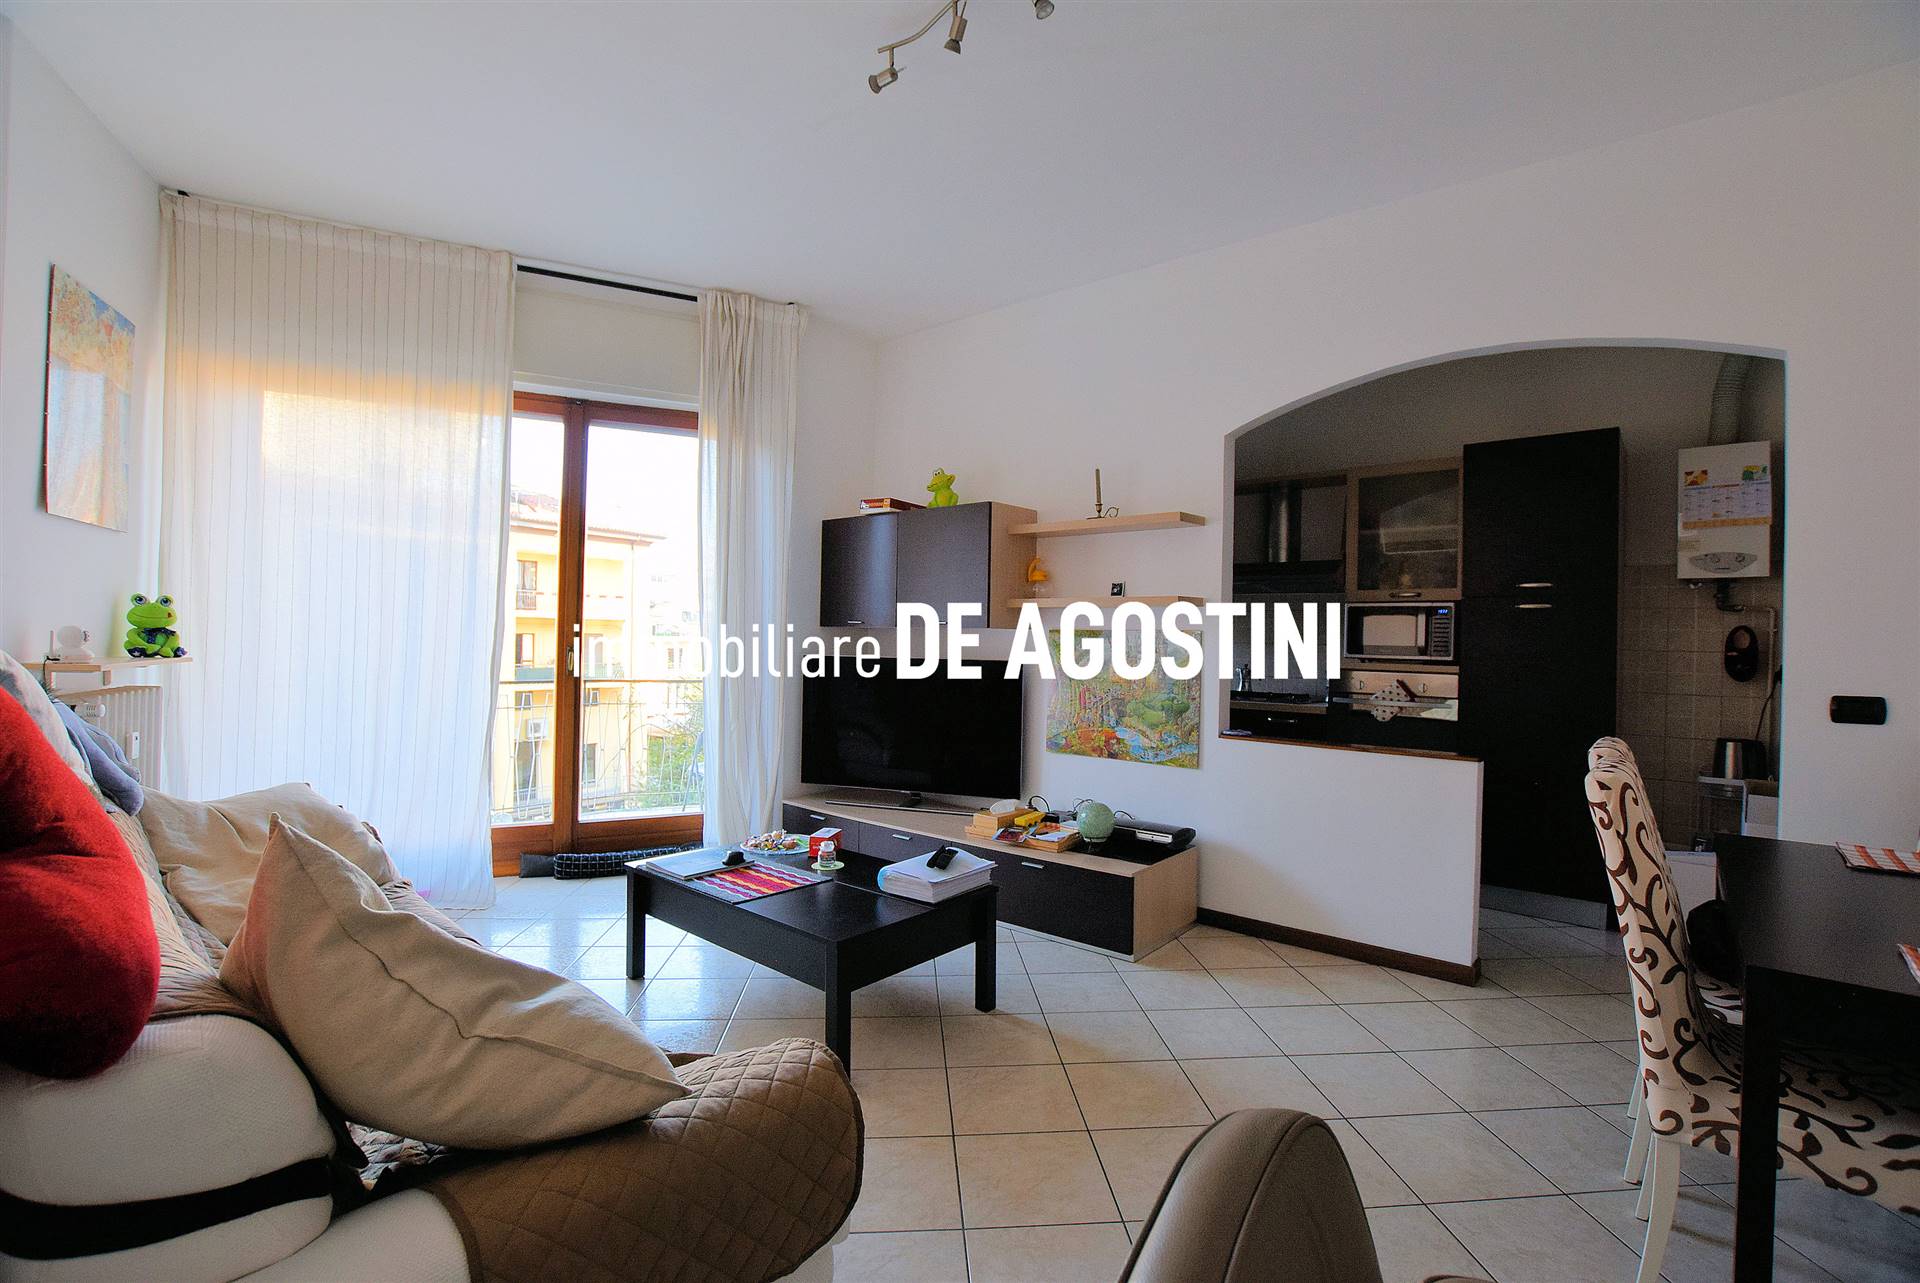 Appartamento in affitto a Arona, 2 locali, prezzo € 470 | CambioCasa.it